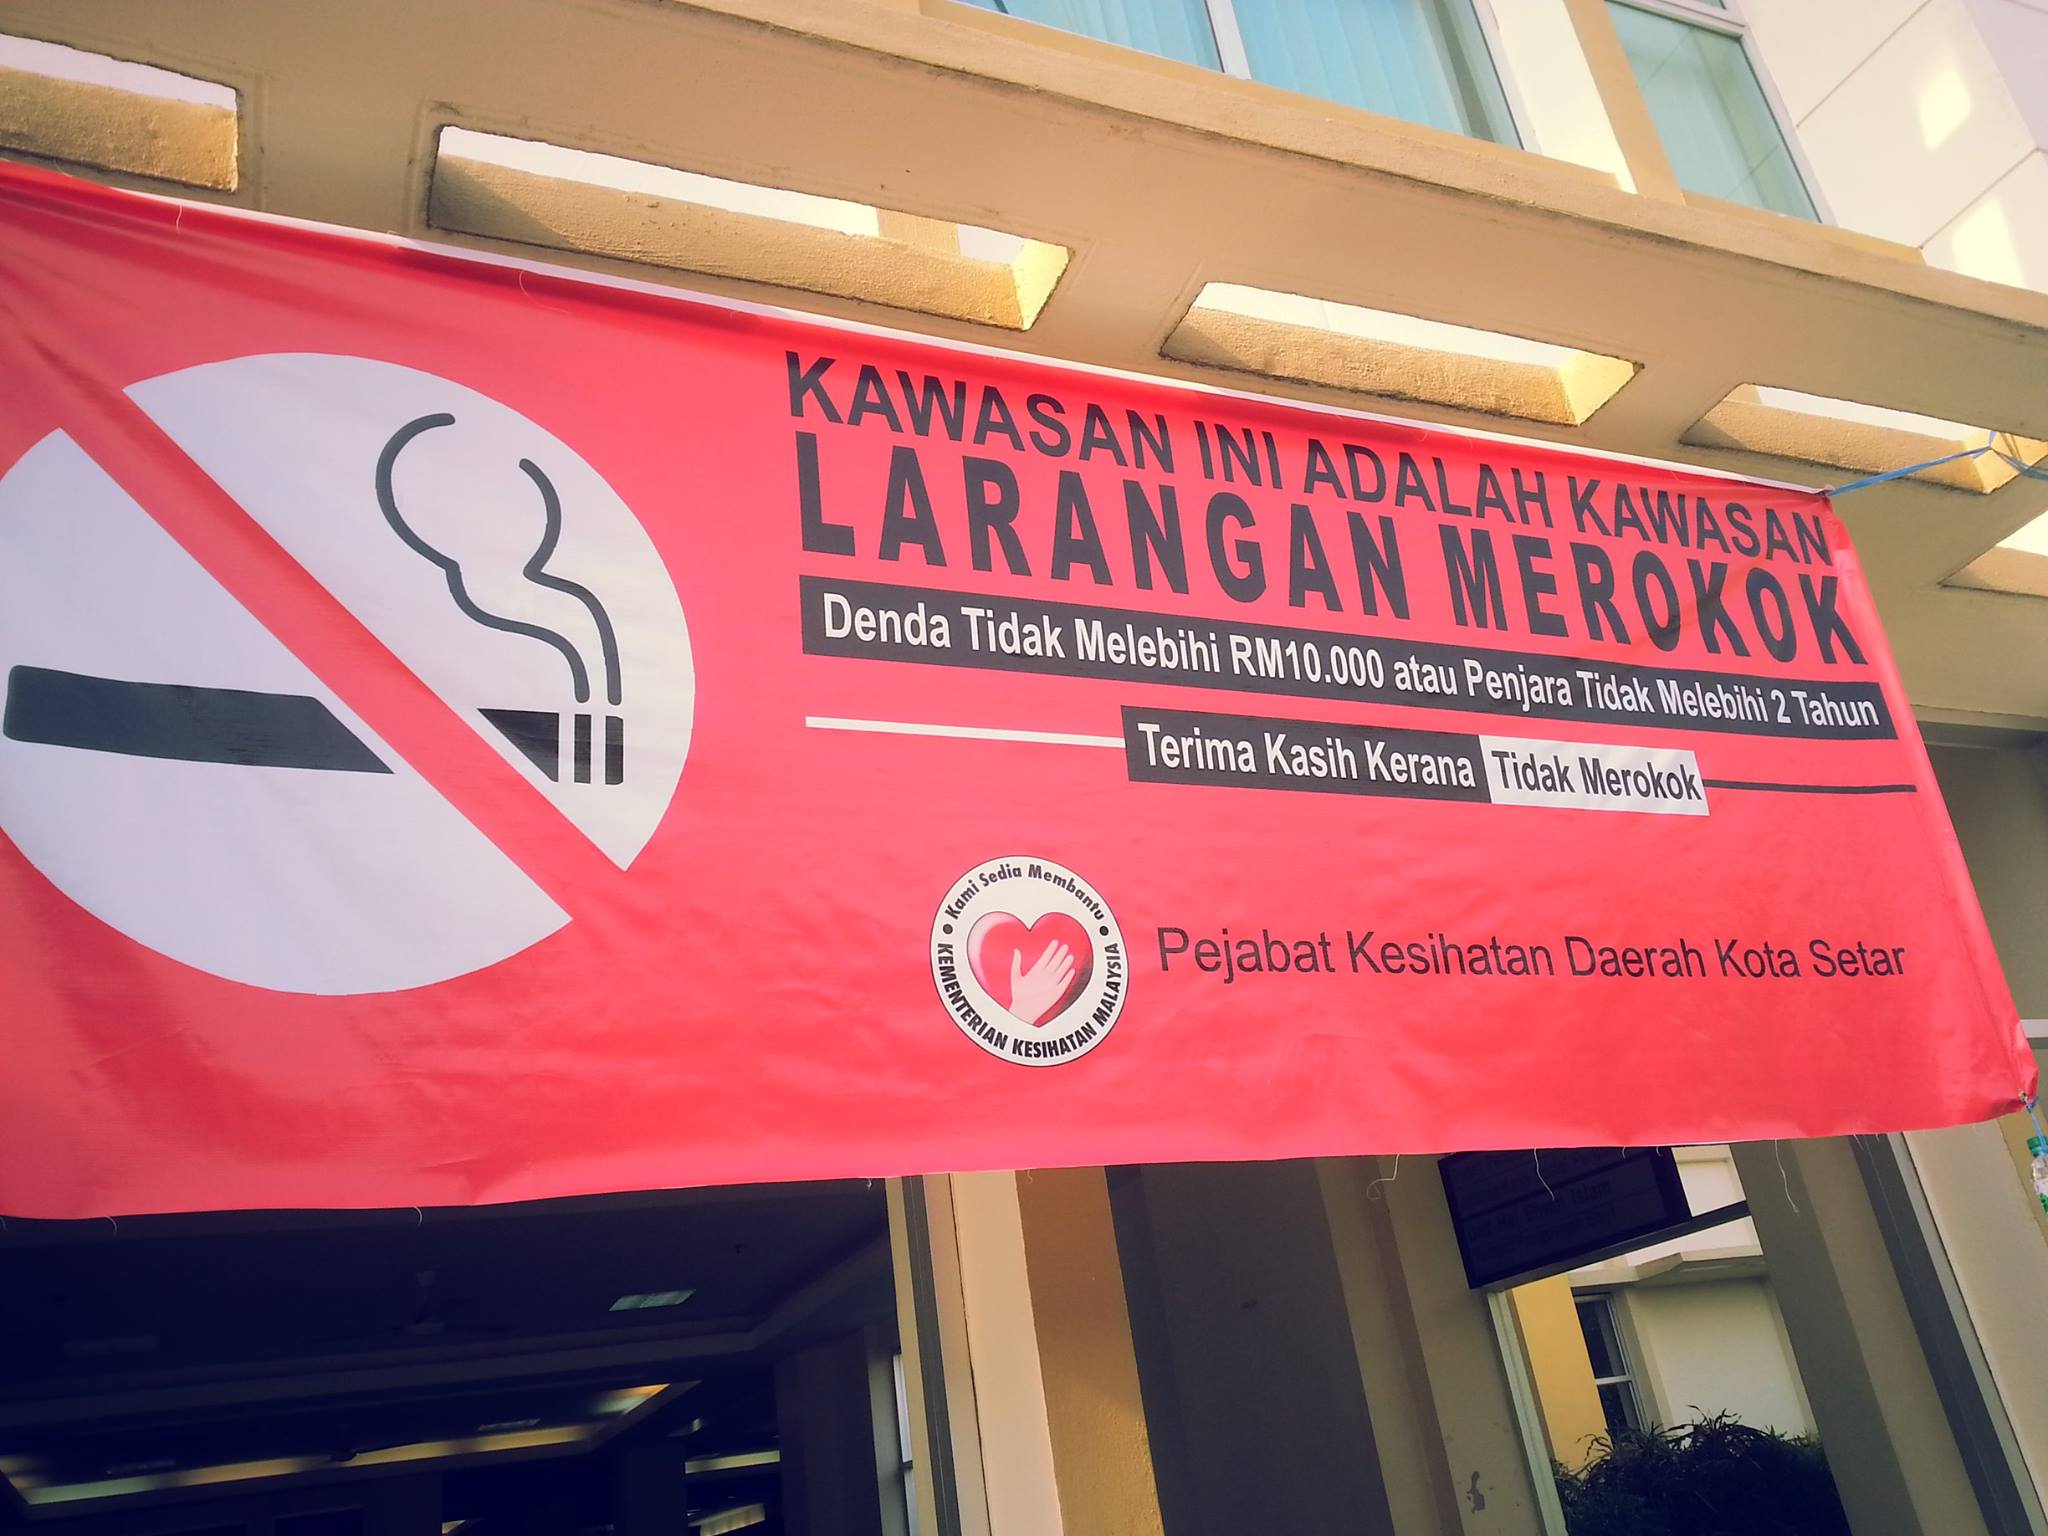 Menteri Kesihatan Haramkan Merokok Di Restoran Dan Gerai 